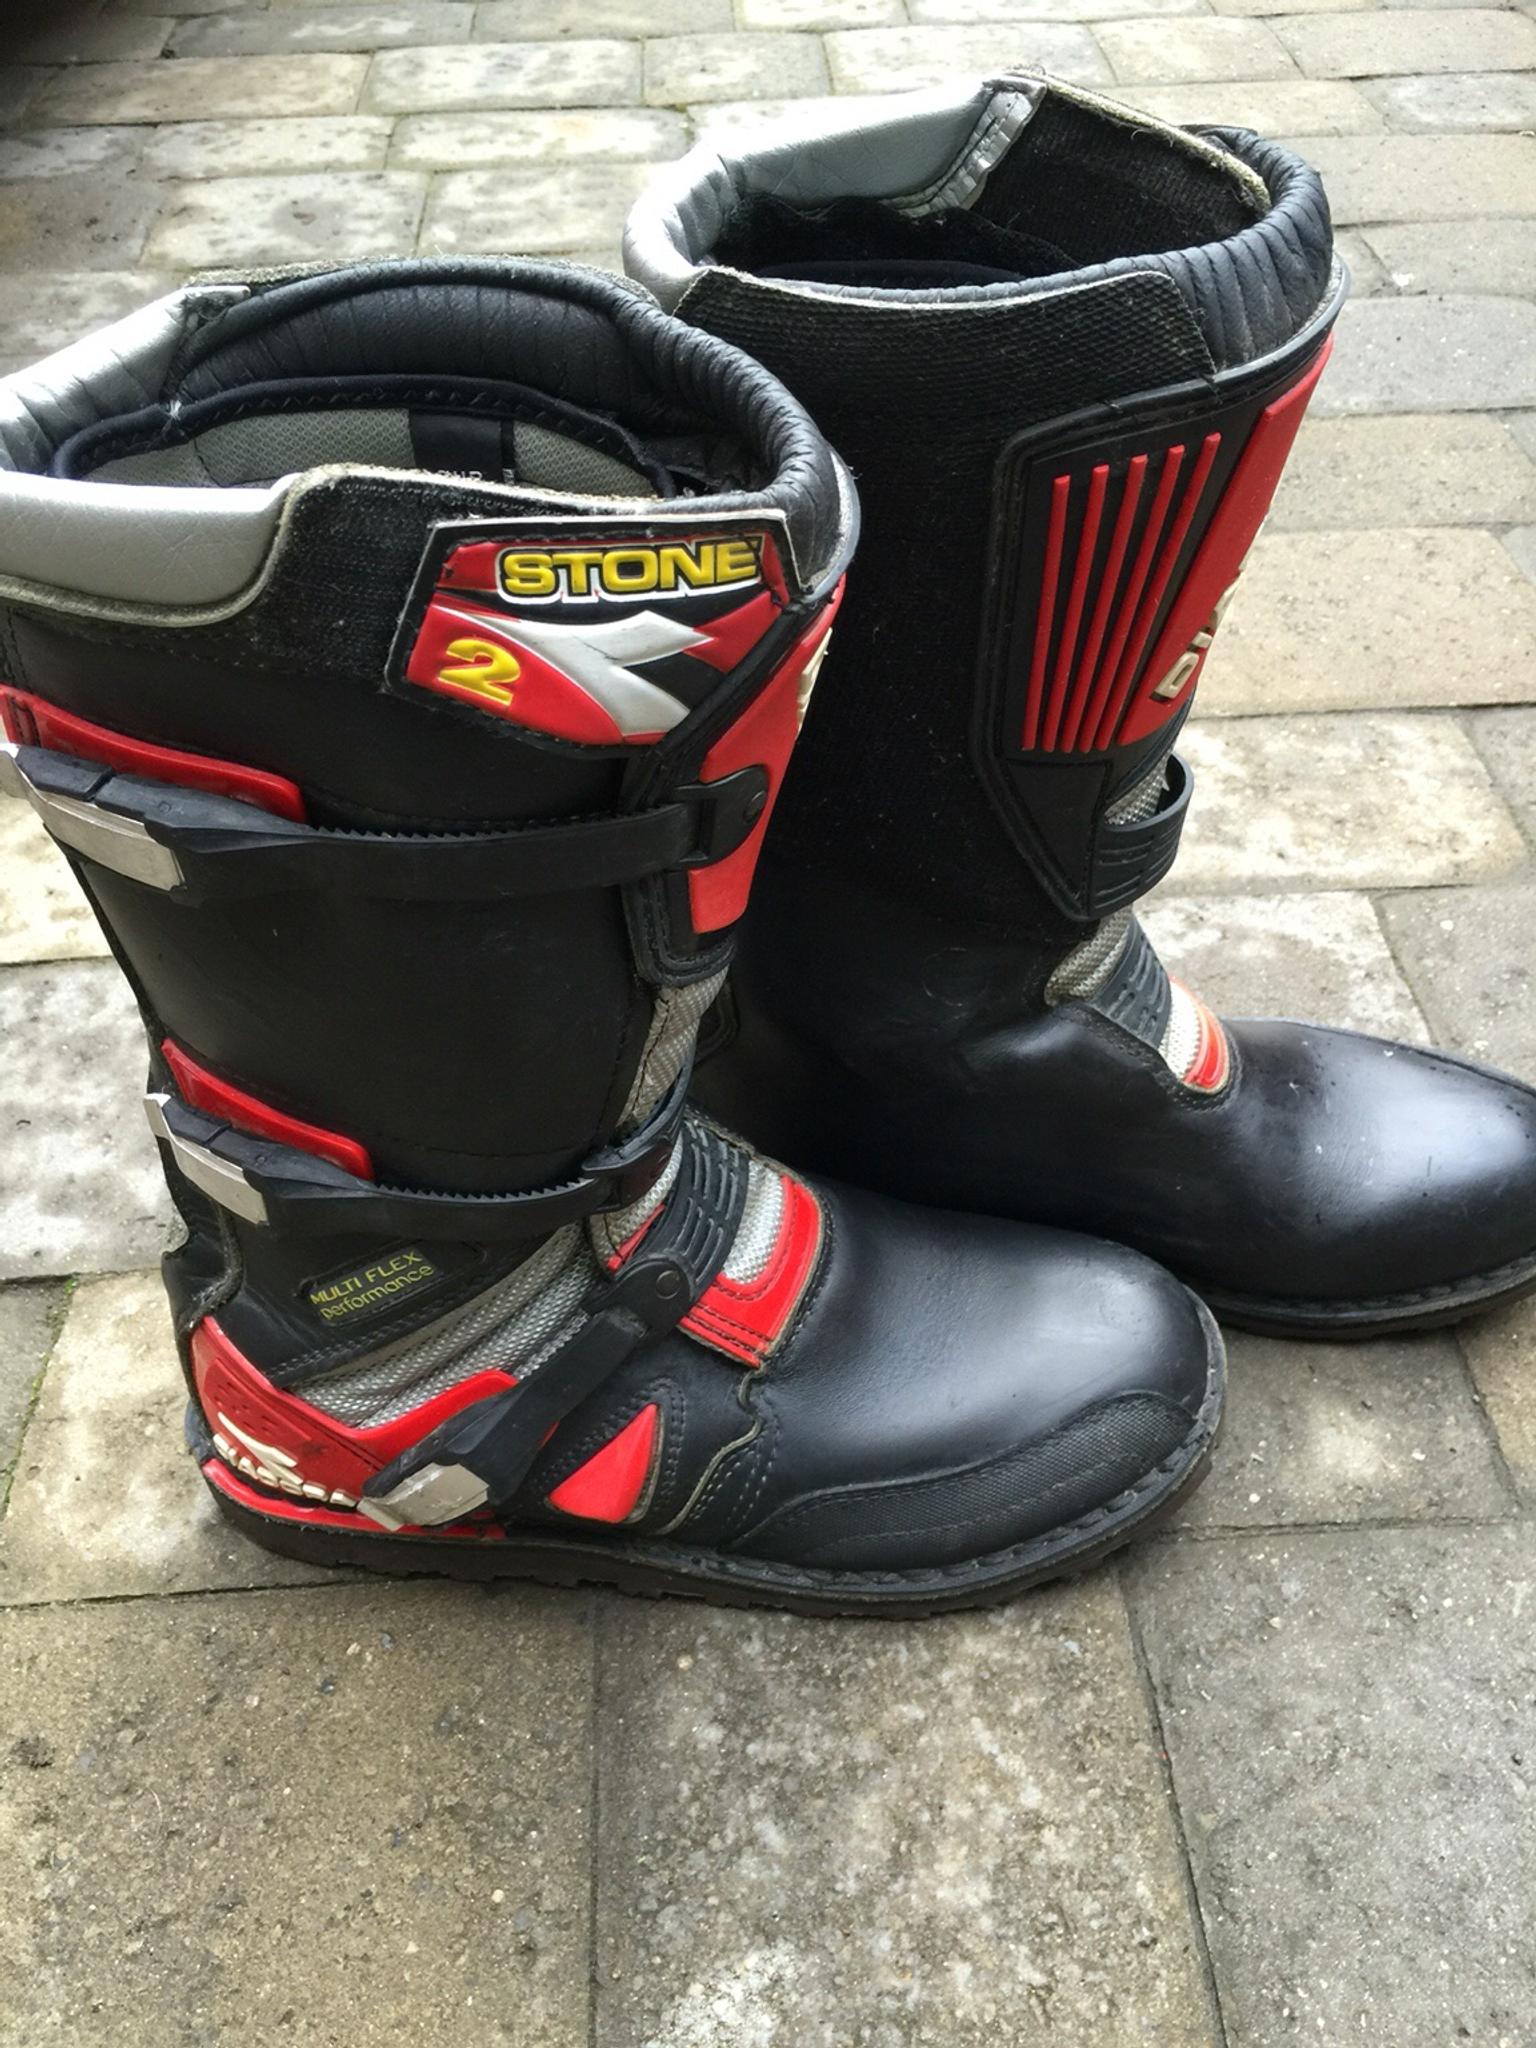 Diadora Trials boots stone2 size eu45 